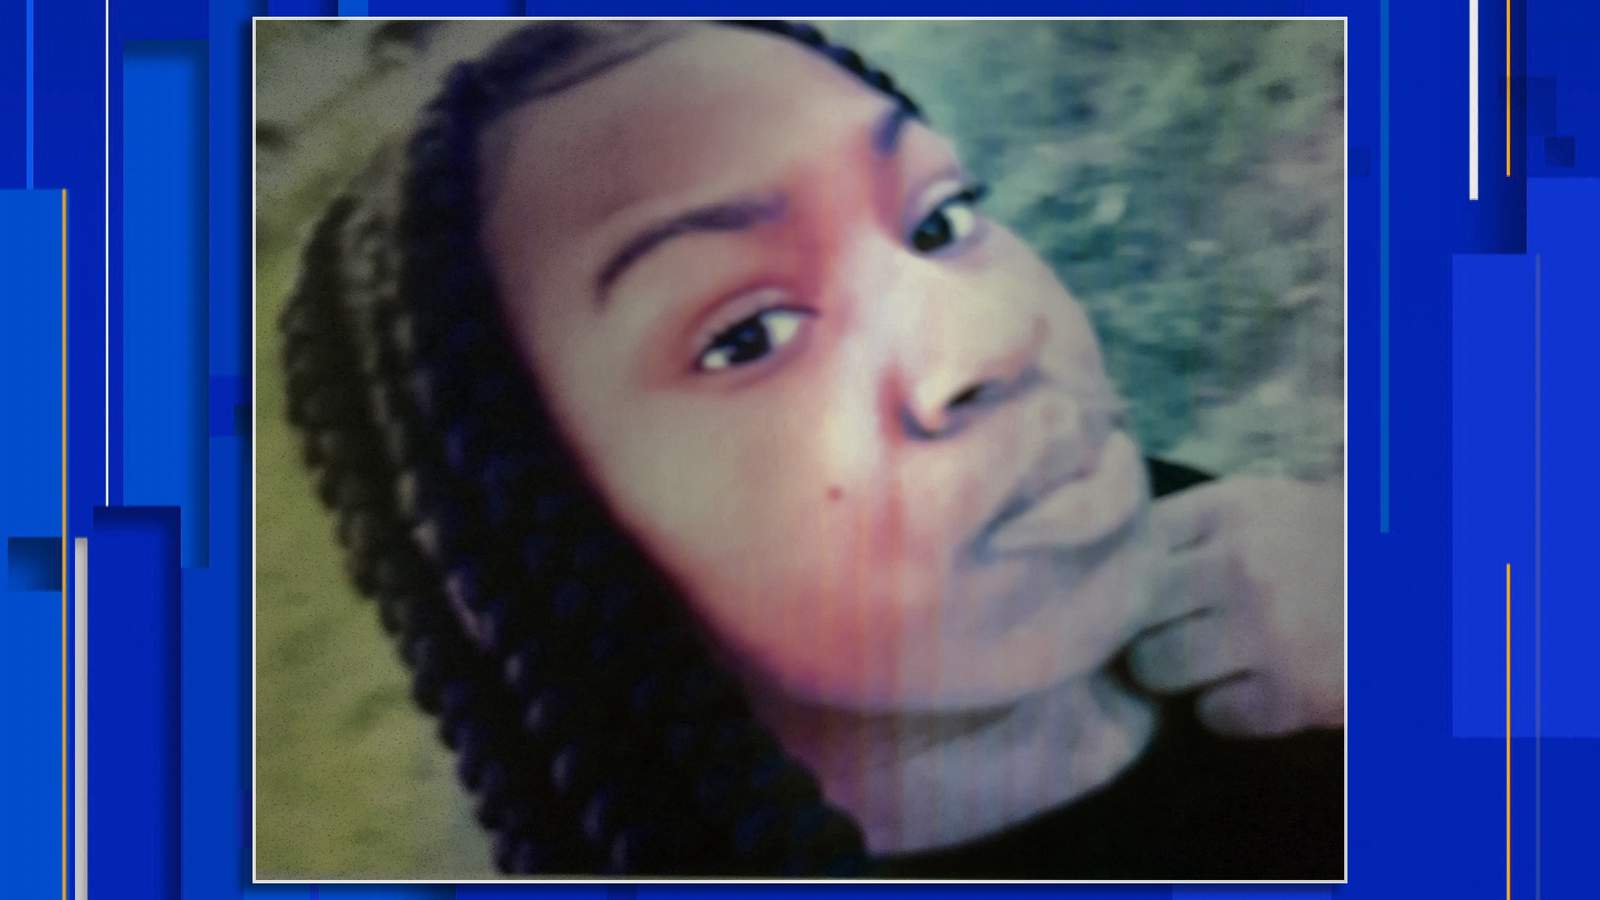 Detroit police seek missing 16-year-old girl last seen in September